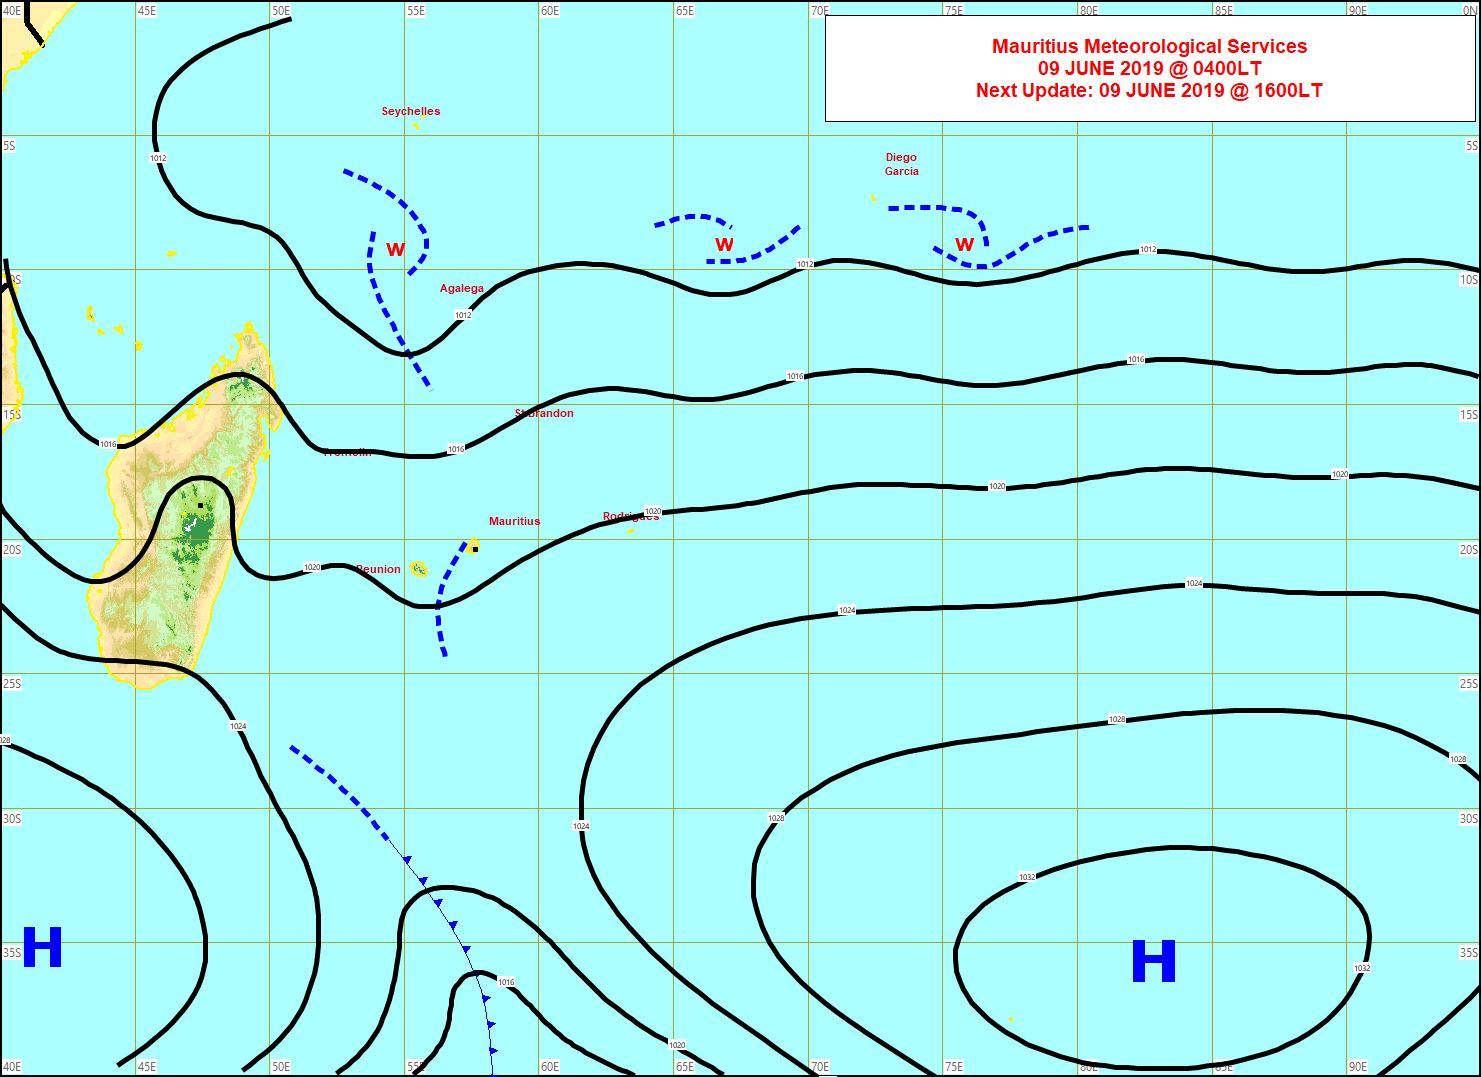 Analyse de surface ce matin. Répit dominical au niveau des vents pour les Iles Soeurs. Cependant un anticyclone s'approche par le sud-ouest. L'alizé va nettement se renforcer à partir de lundi sur la zone alors que la haute mer va grossir. MMS